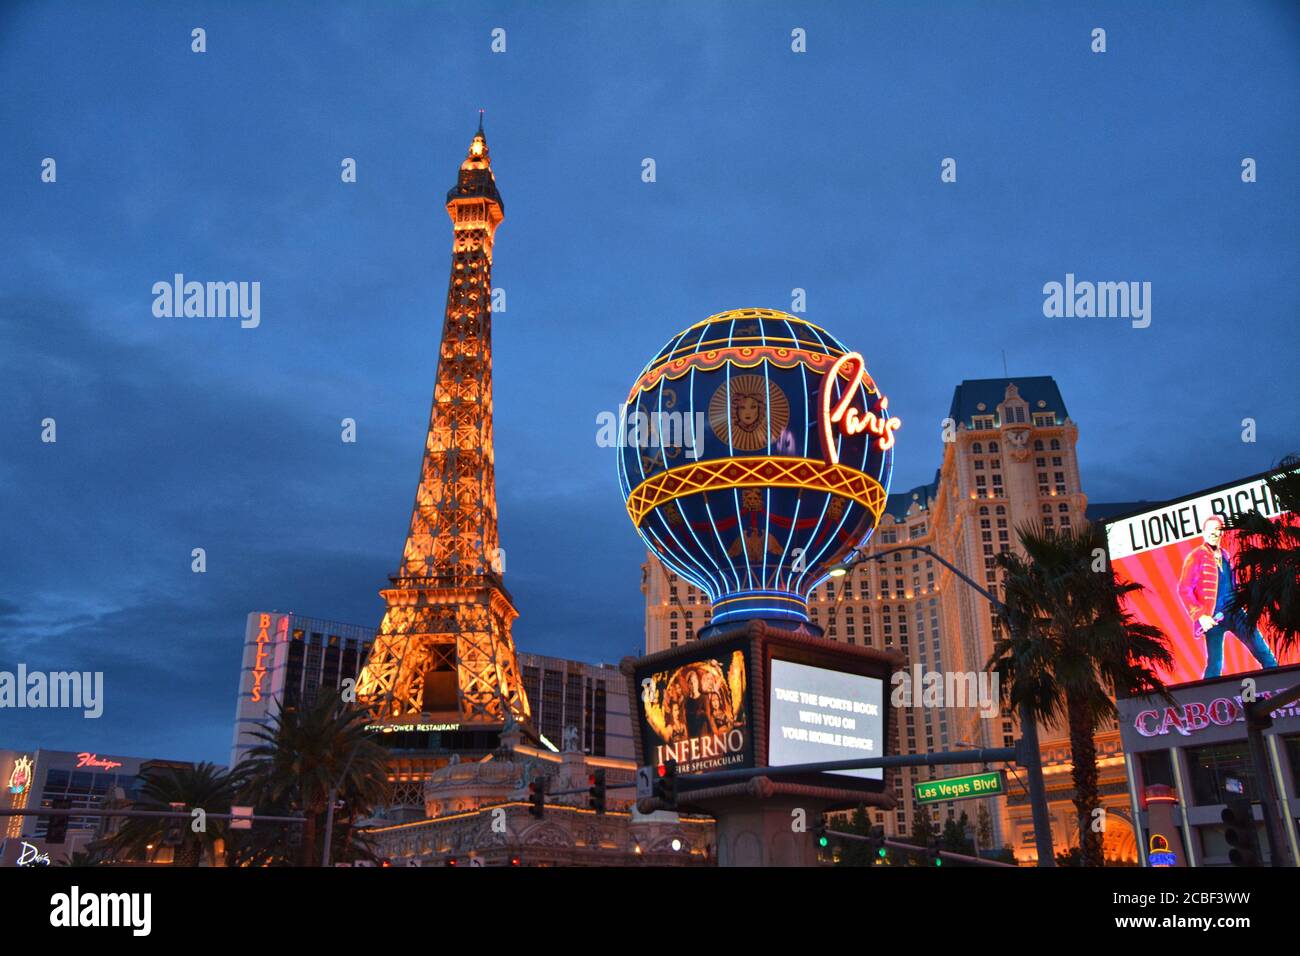 Book an Event at Paris Las Vegas